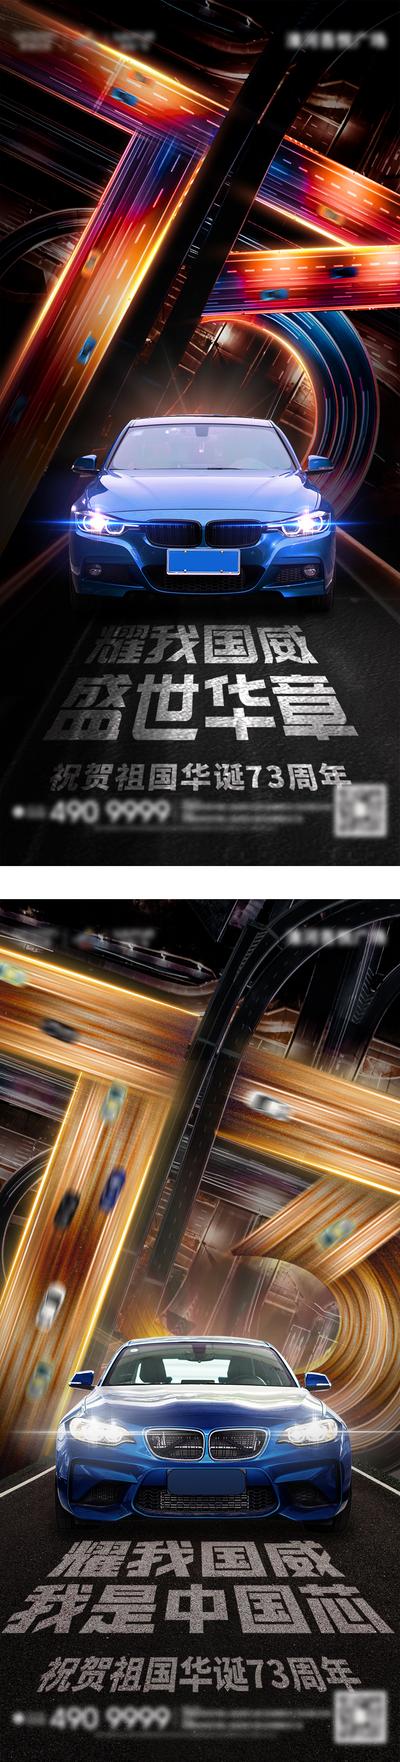 南门网 广告 海报 背景板 国庆 电商 地产 活动 汽车 节日 科技